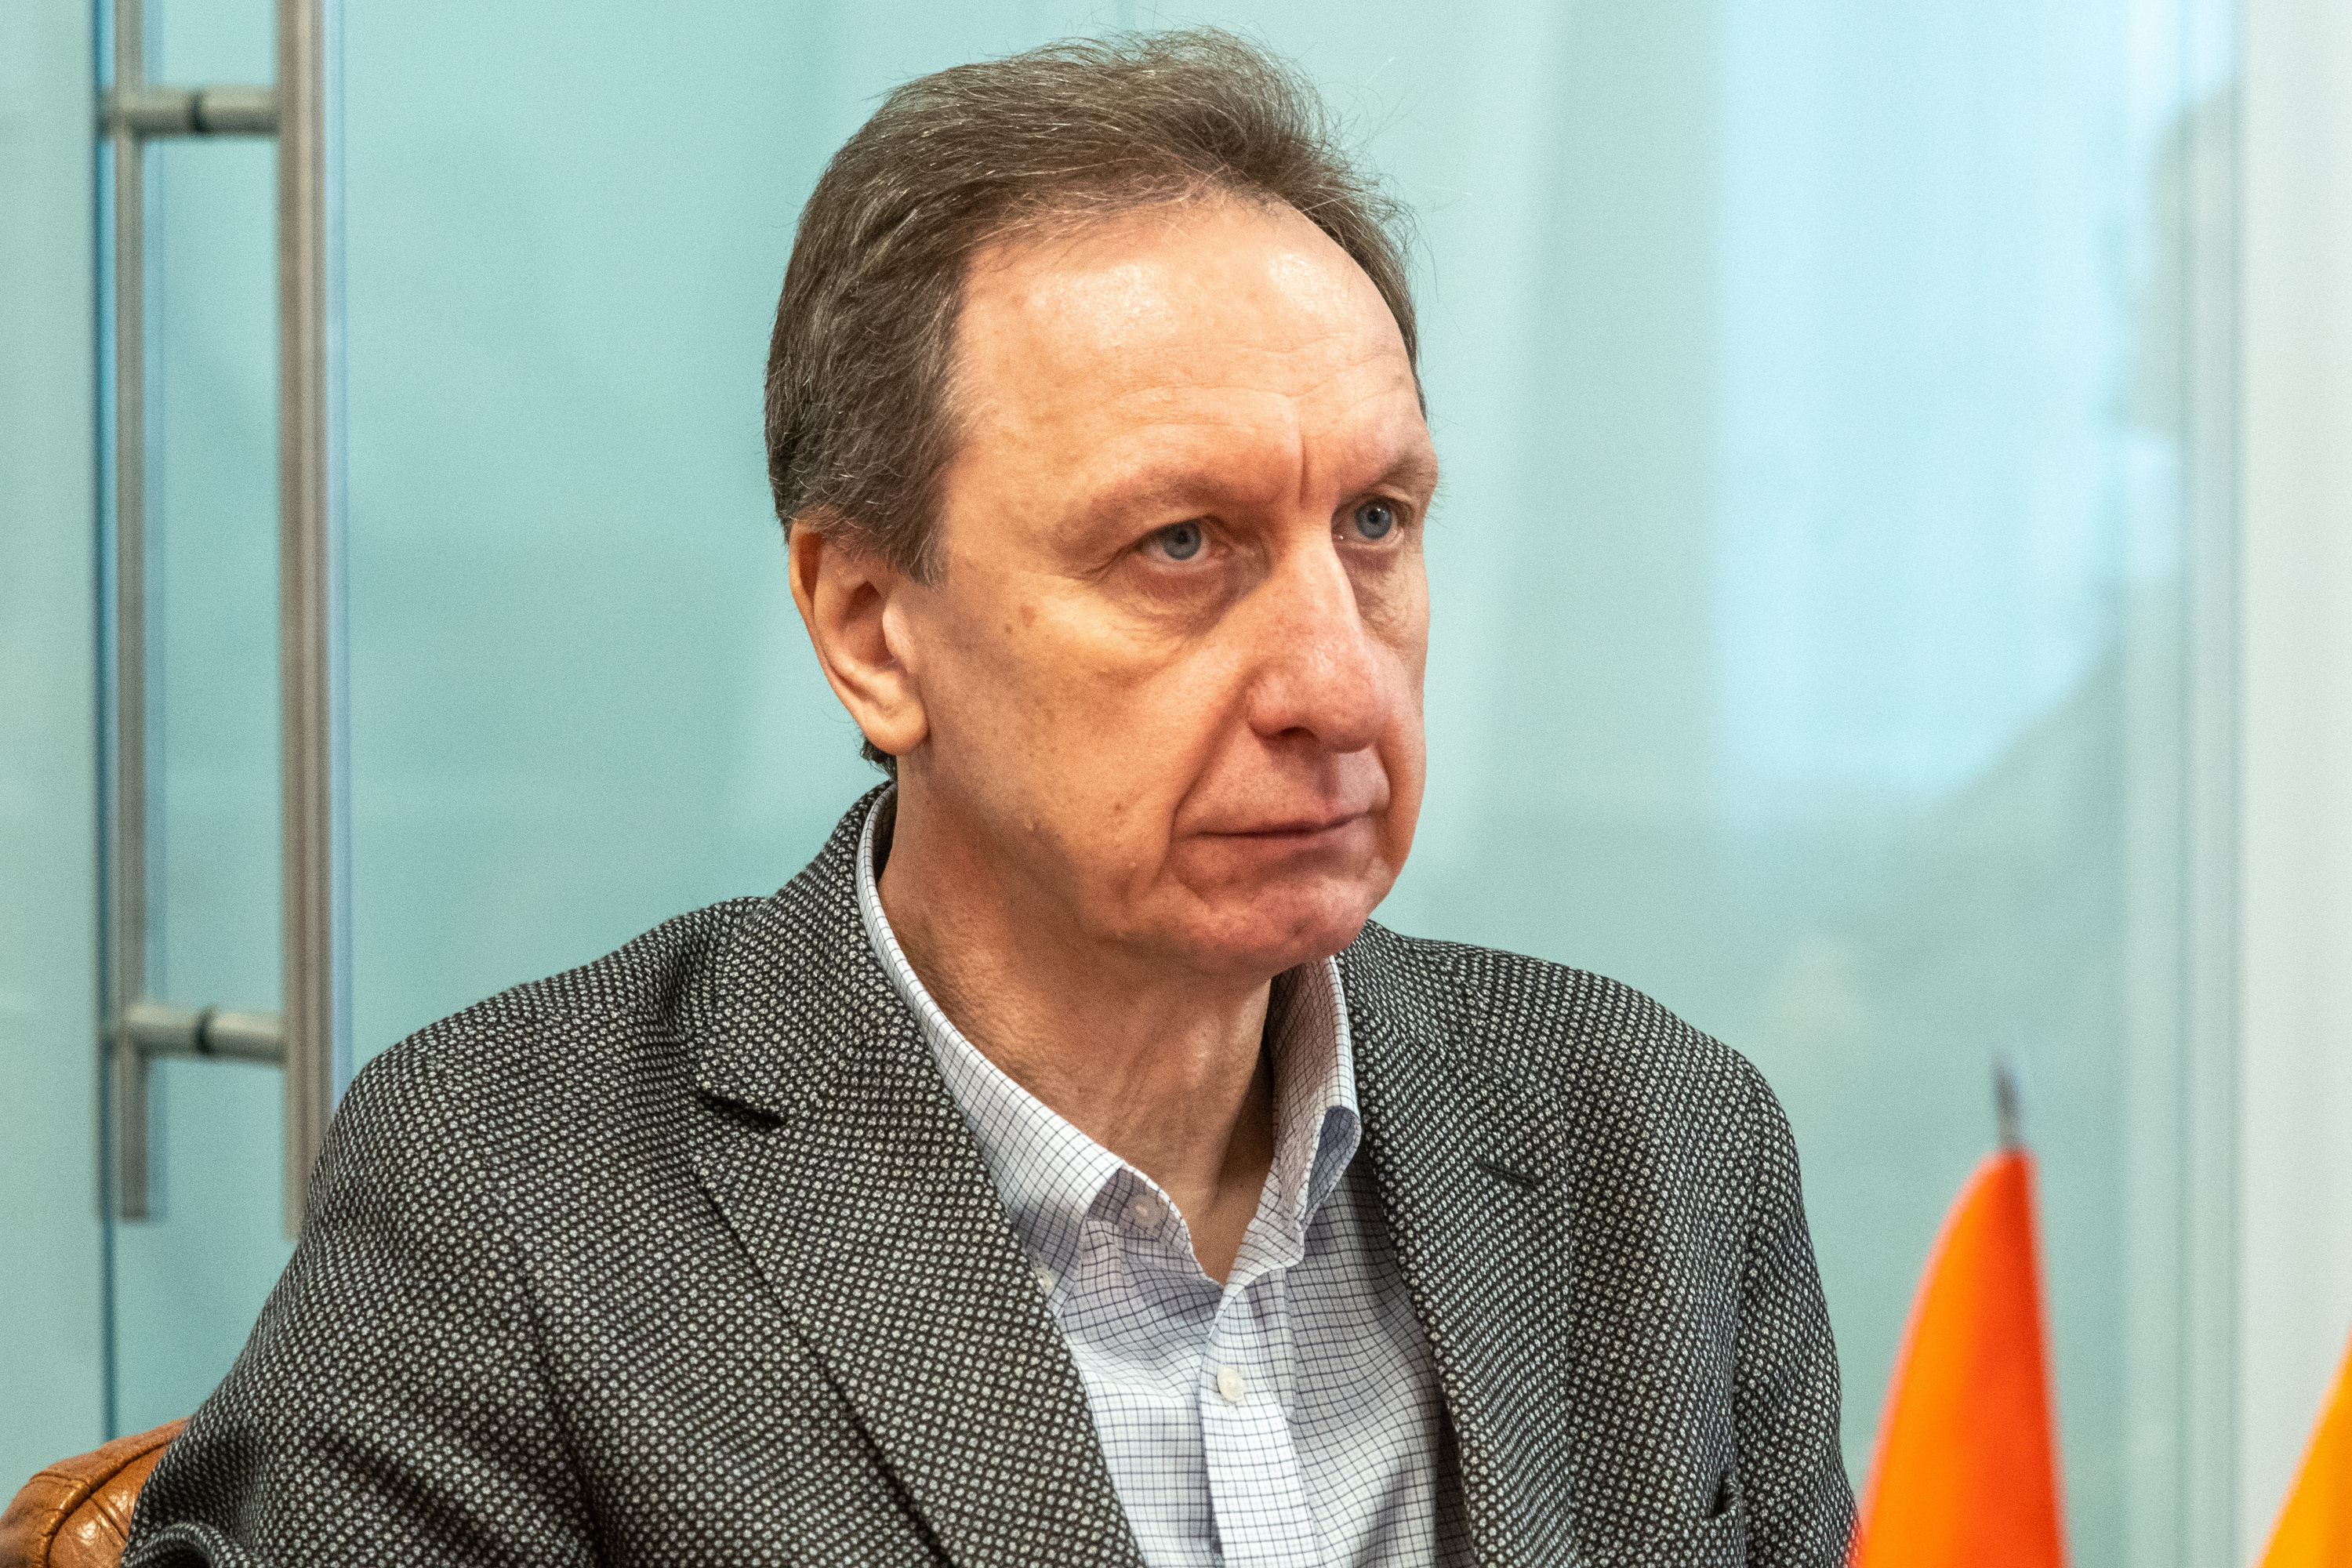 Виктор Станковский, партнер и директор петербургского филиала юридической фирмы «Городисский и партнеры»